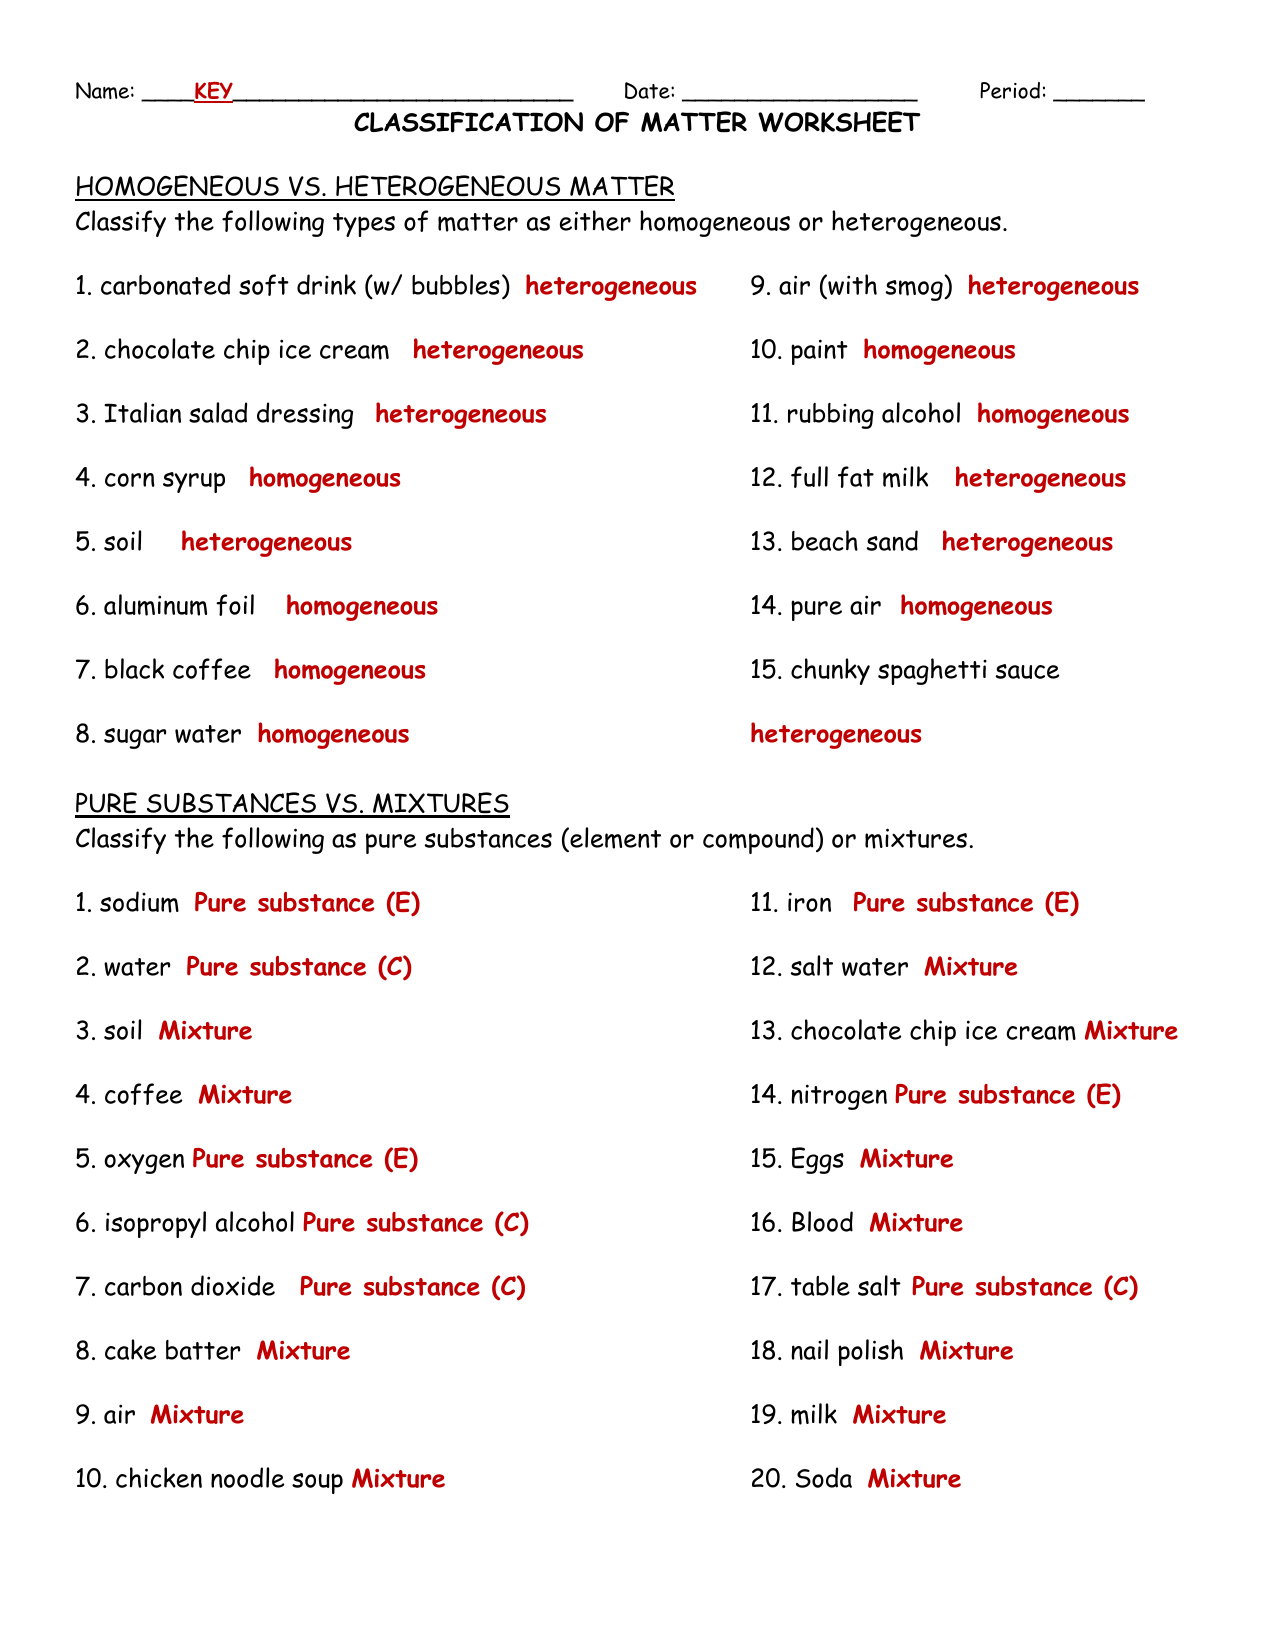 Heterogeneous And Homogeneous Mixtures Worksheet Answers Within Mixtures Worksheet Answer Key